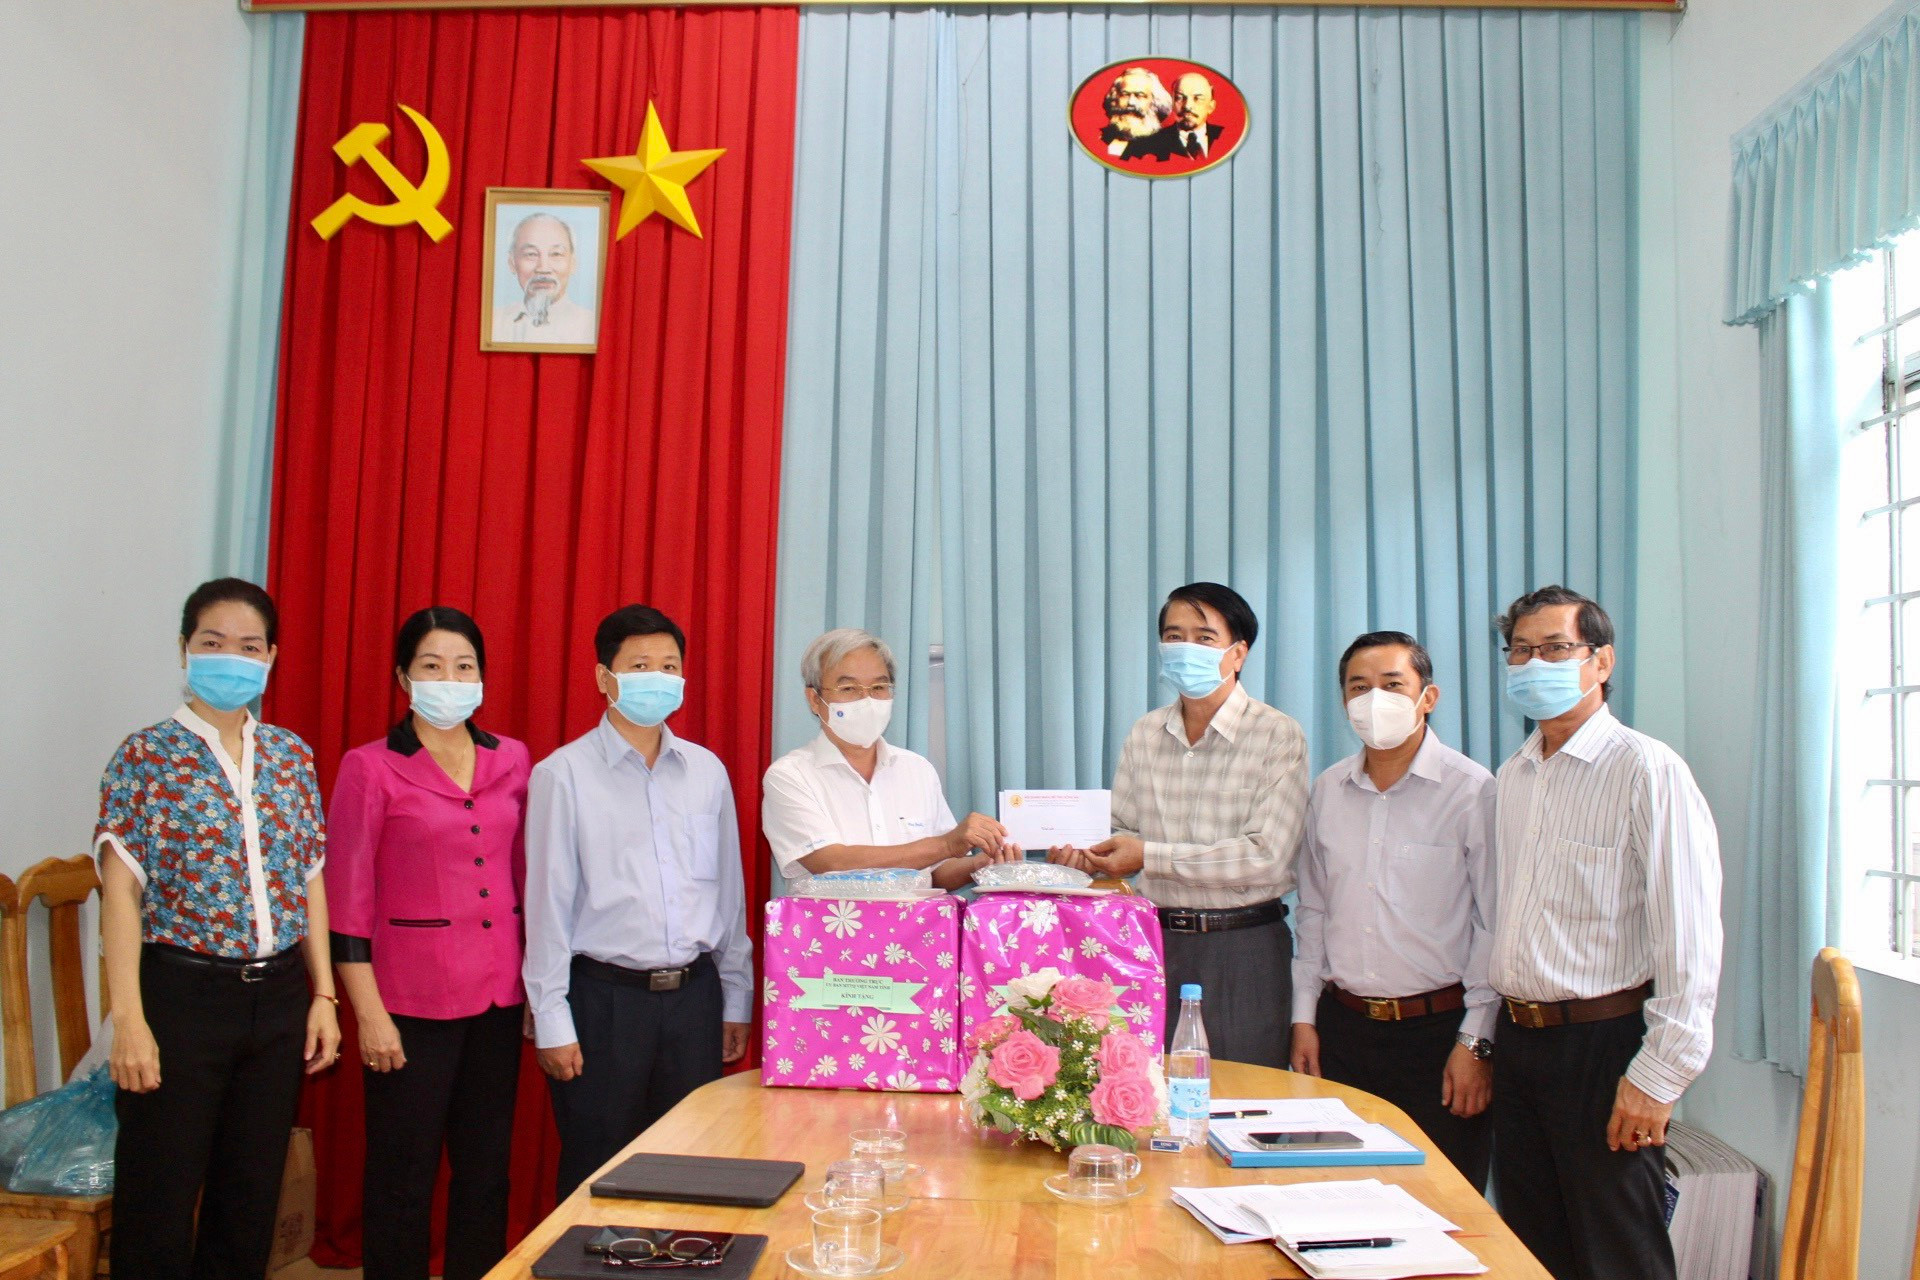 Đoàn công tác Ủy ban MTTQ Việt Nam tỉnh Đồng Nai trao tặng trang thiết bị và kinh phí phòng, chống dịch Covid-19 cho Ủy ban MTTQ Việt Nam thành phố Biên Hòa.